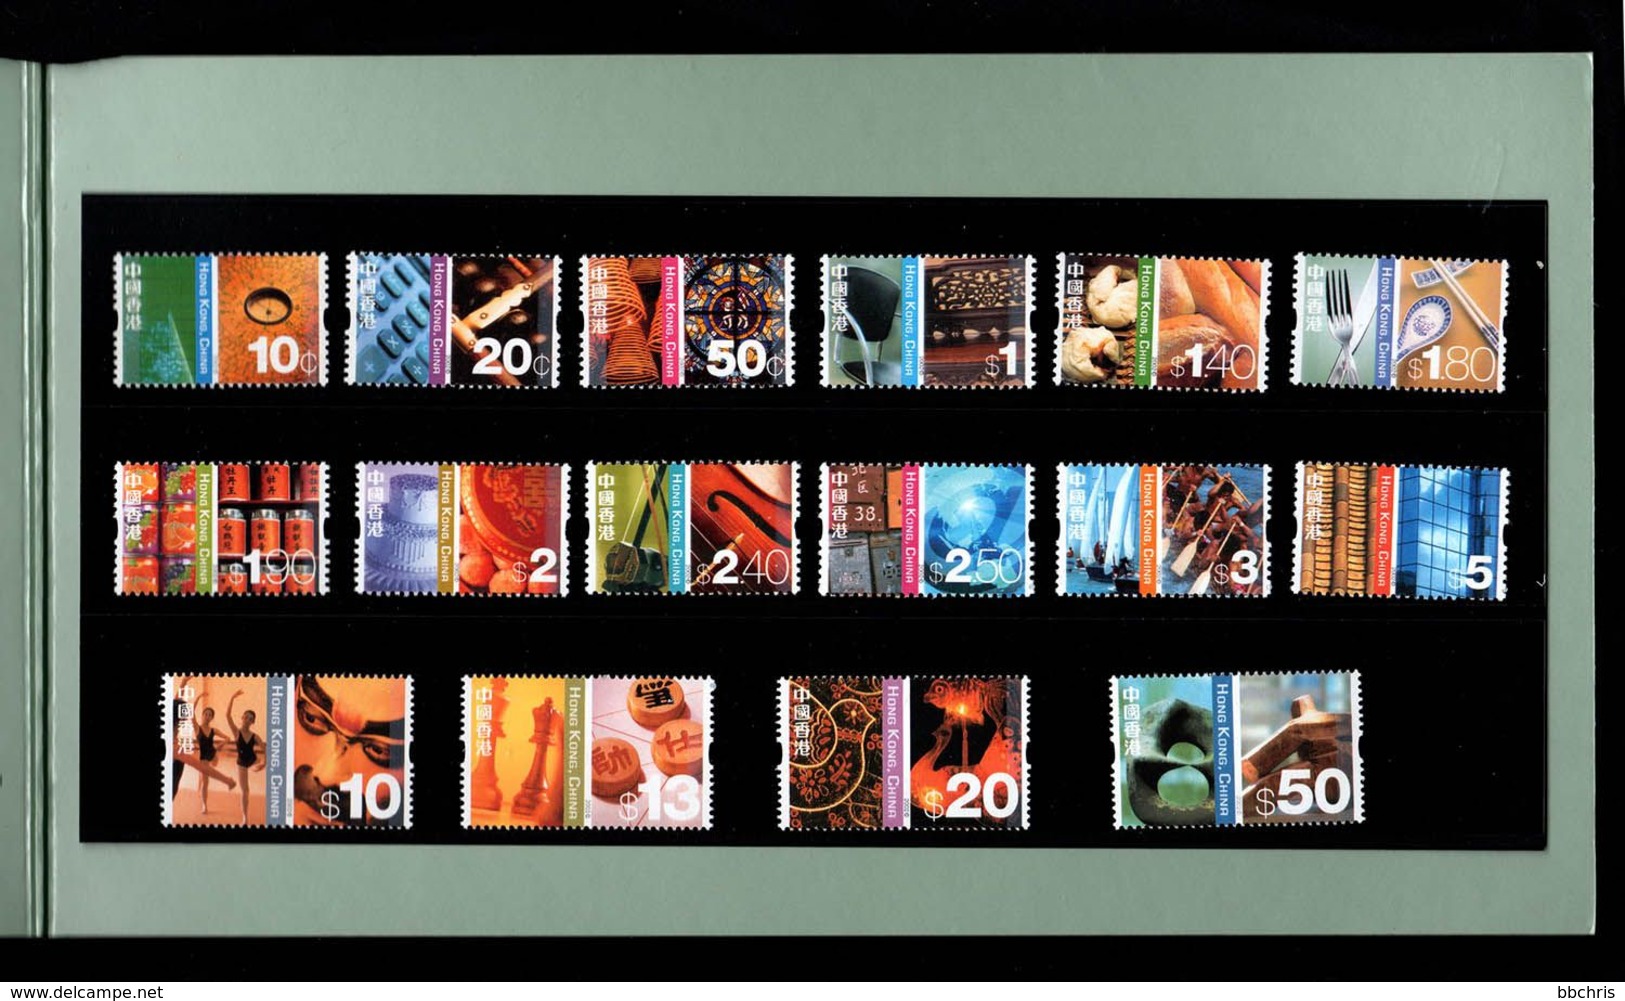 Hong Kong 2002 Definitive Stamps 10c-$50 Presentation Pack MNH SG 1119-1134 - Booklets